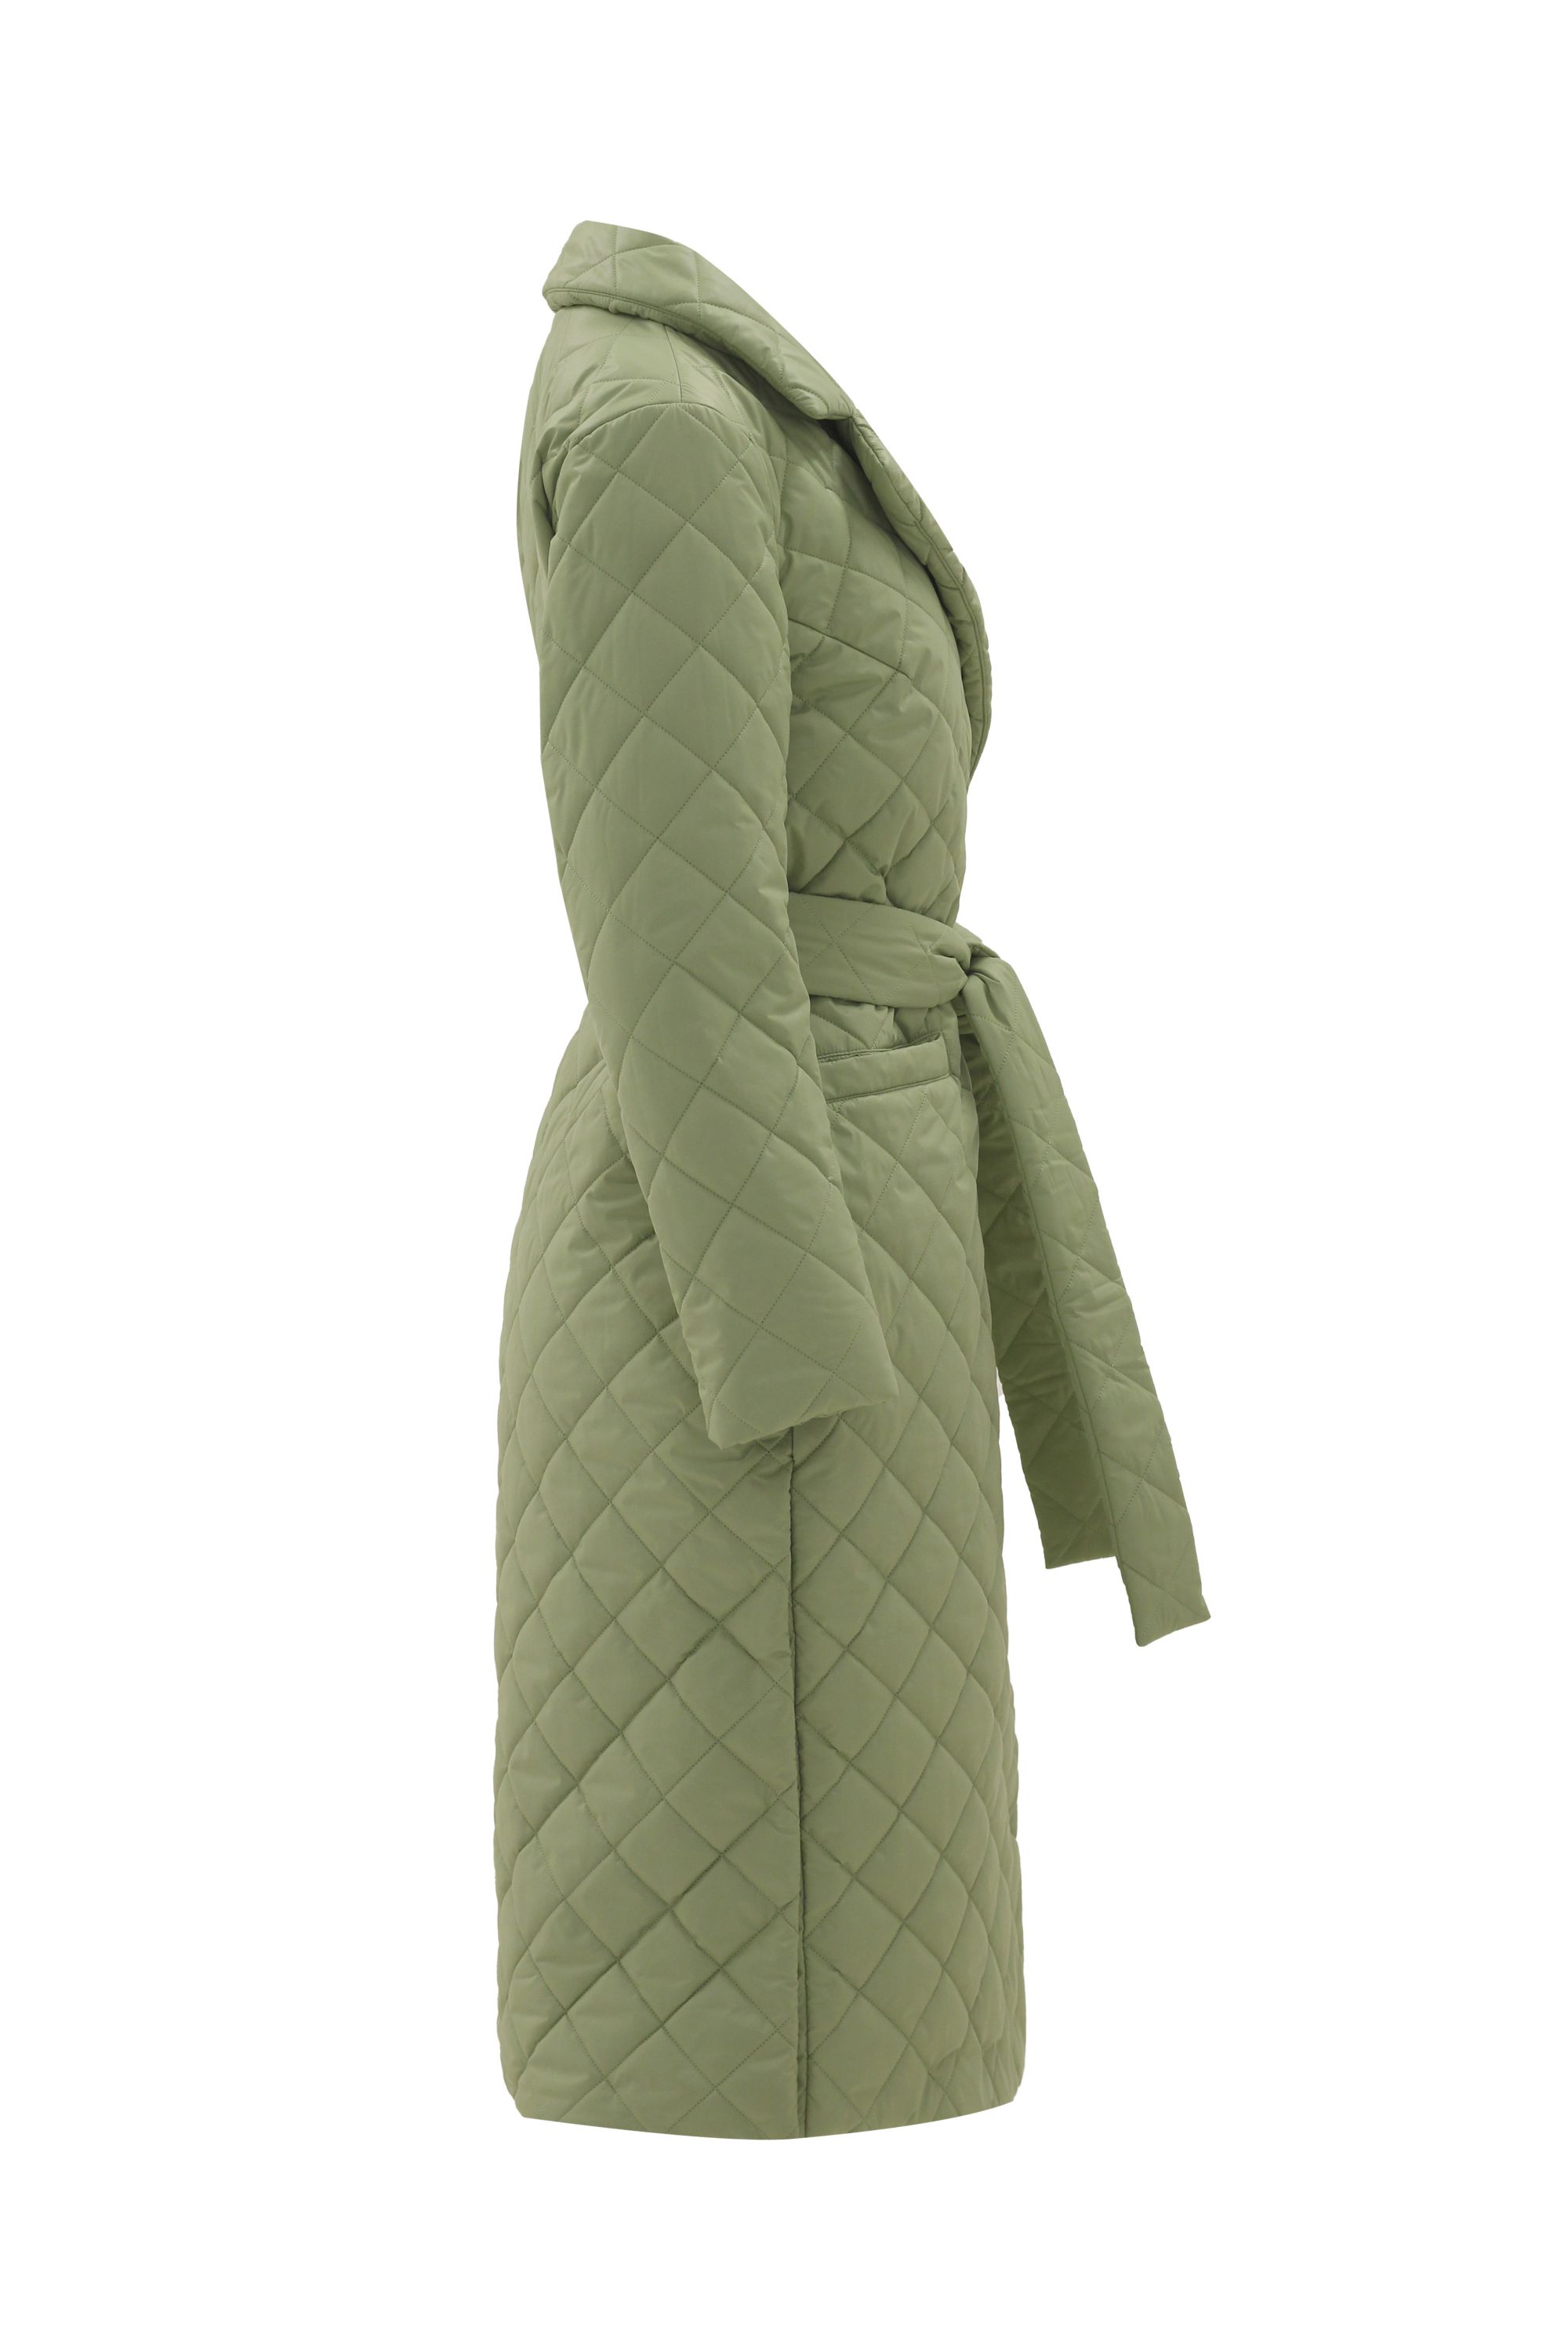 Пальто женское плащевое утепленное 5-12115-1. Фото 2.